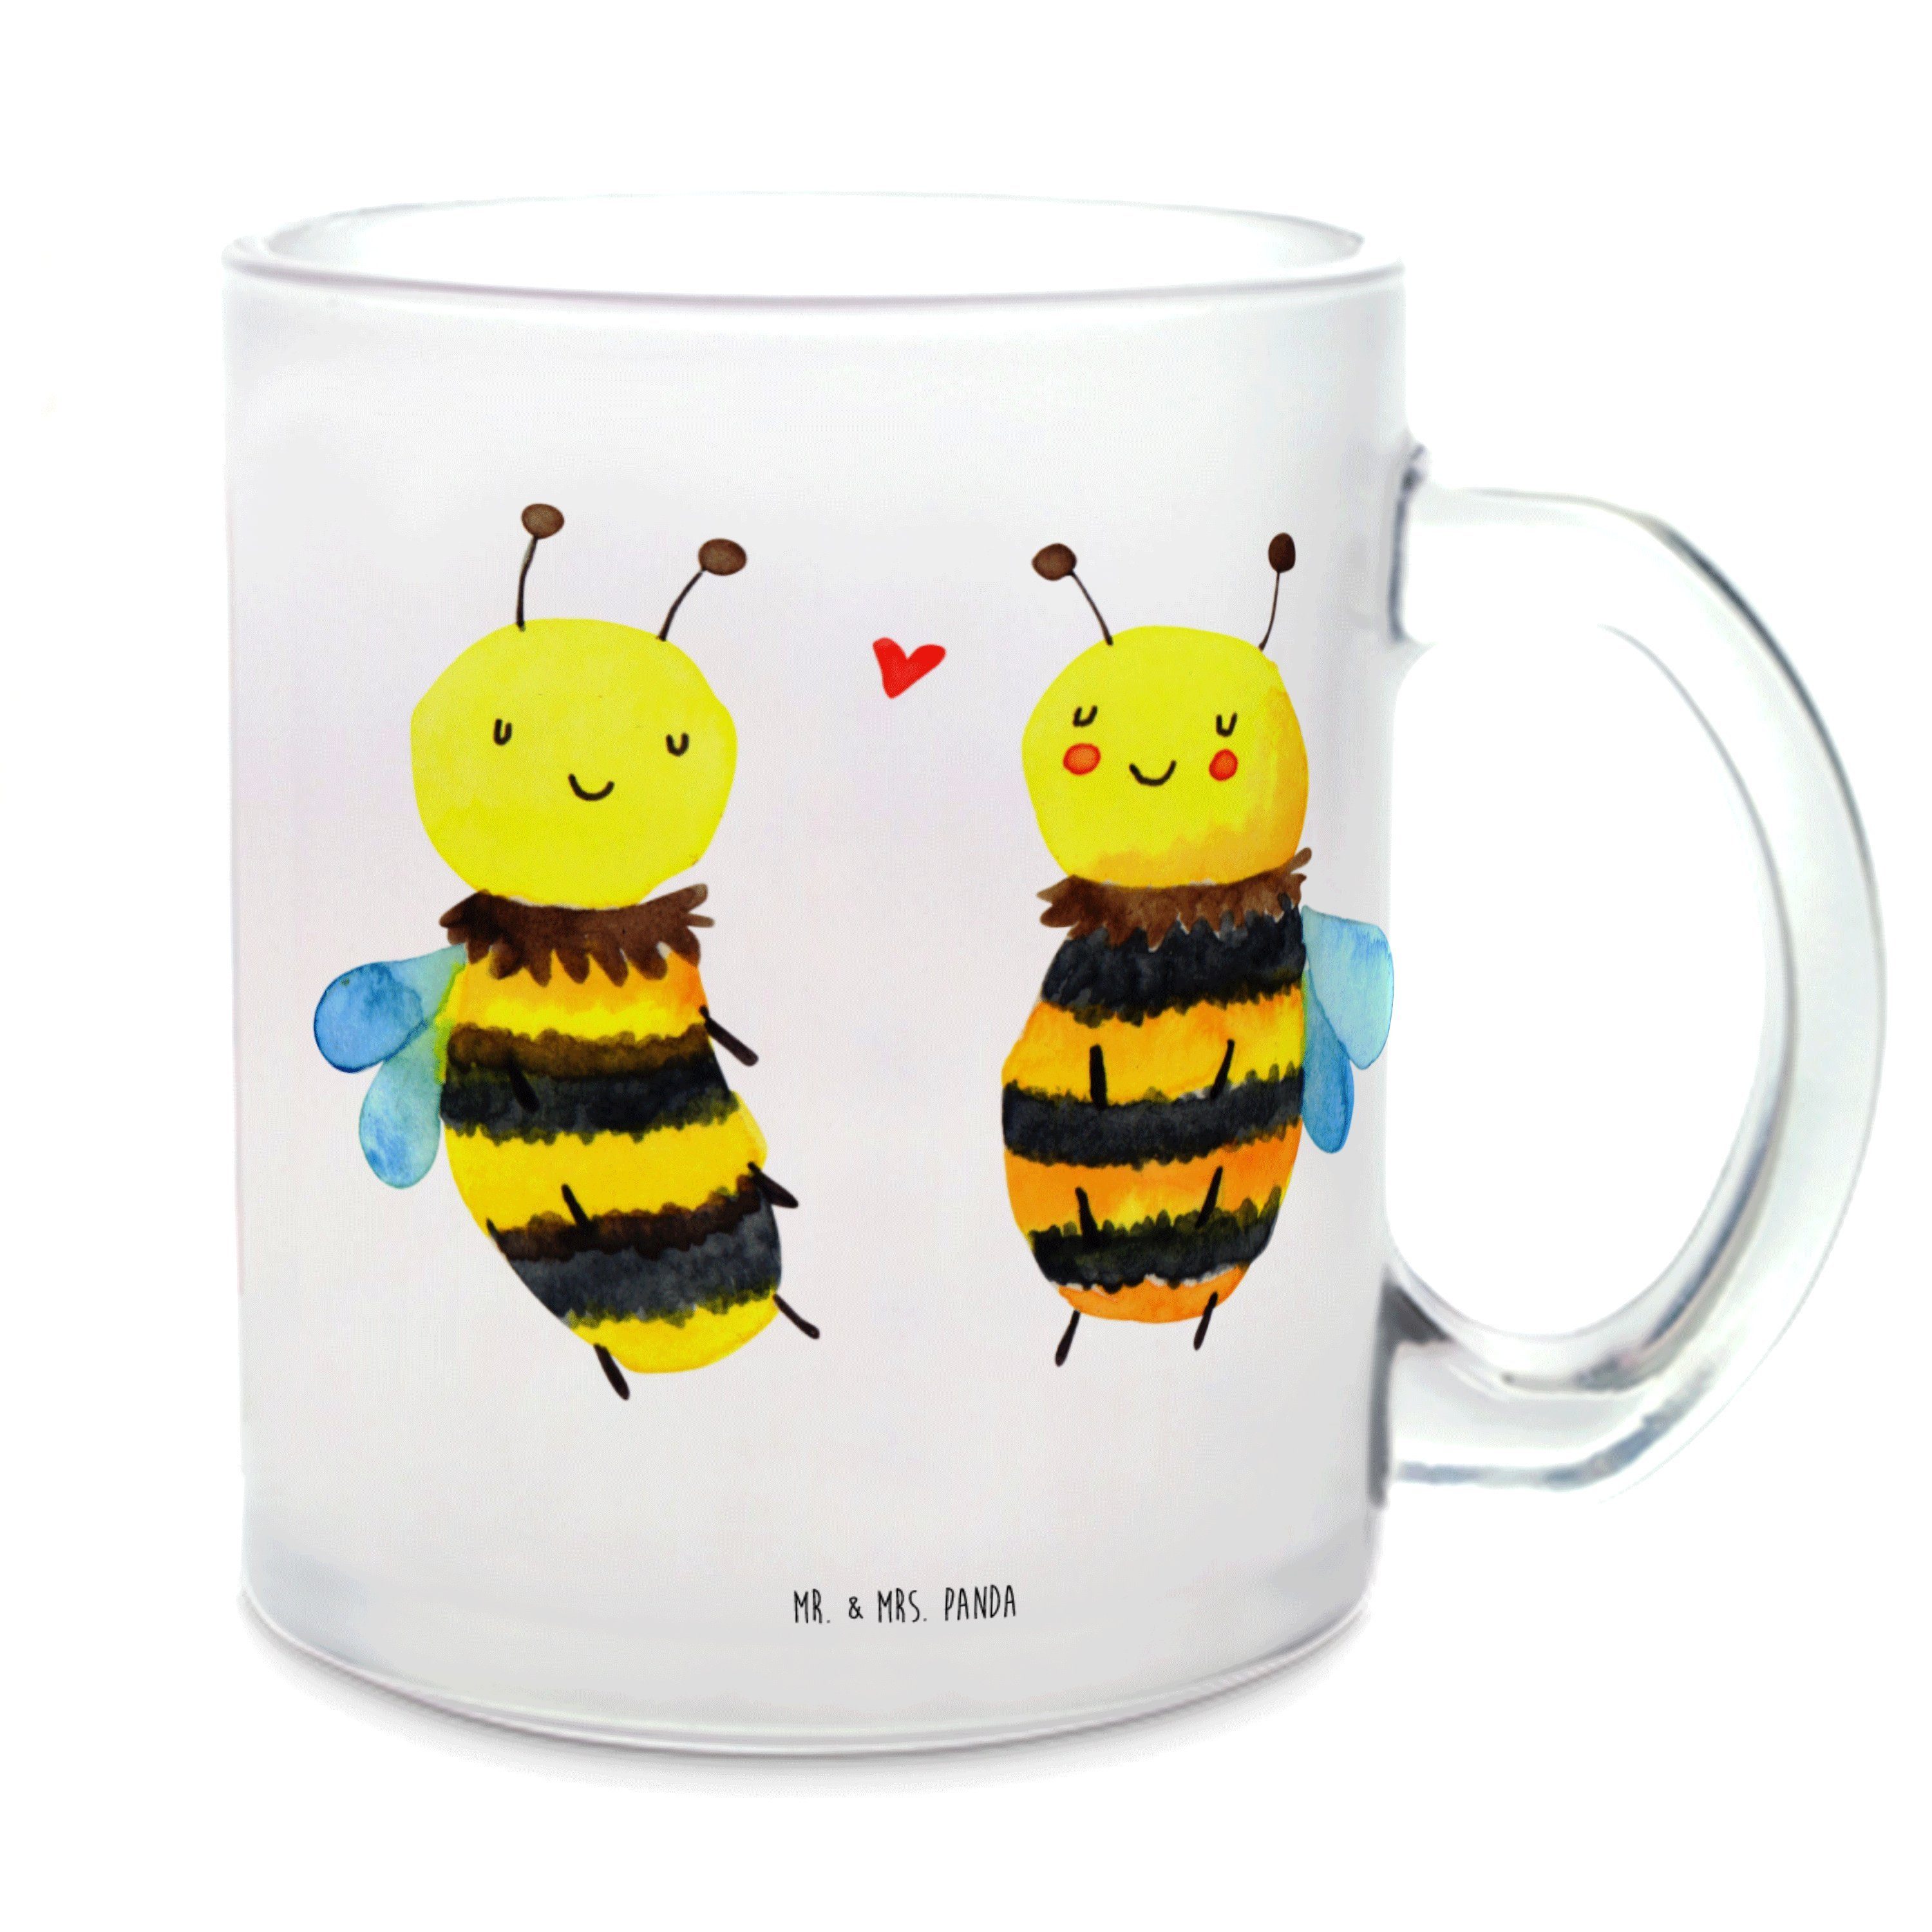 Mr. & Mrs. Panda Teeglas Biene Verliebt - Transparent - Geschenk, Teetasse, Teetasse aus Glas, Premium Glas, Edler Aufdruck